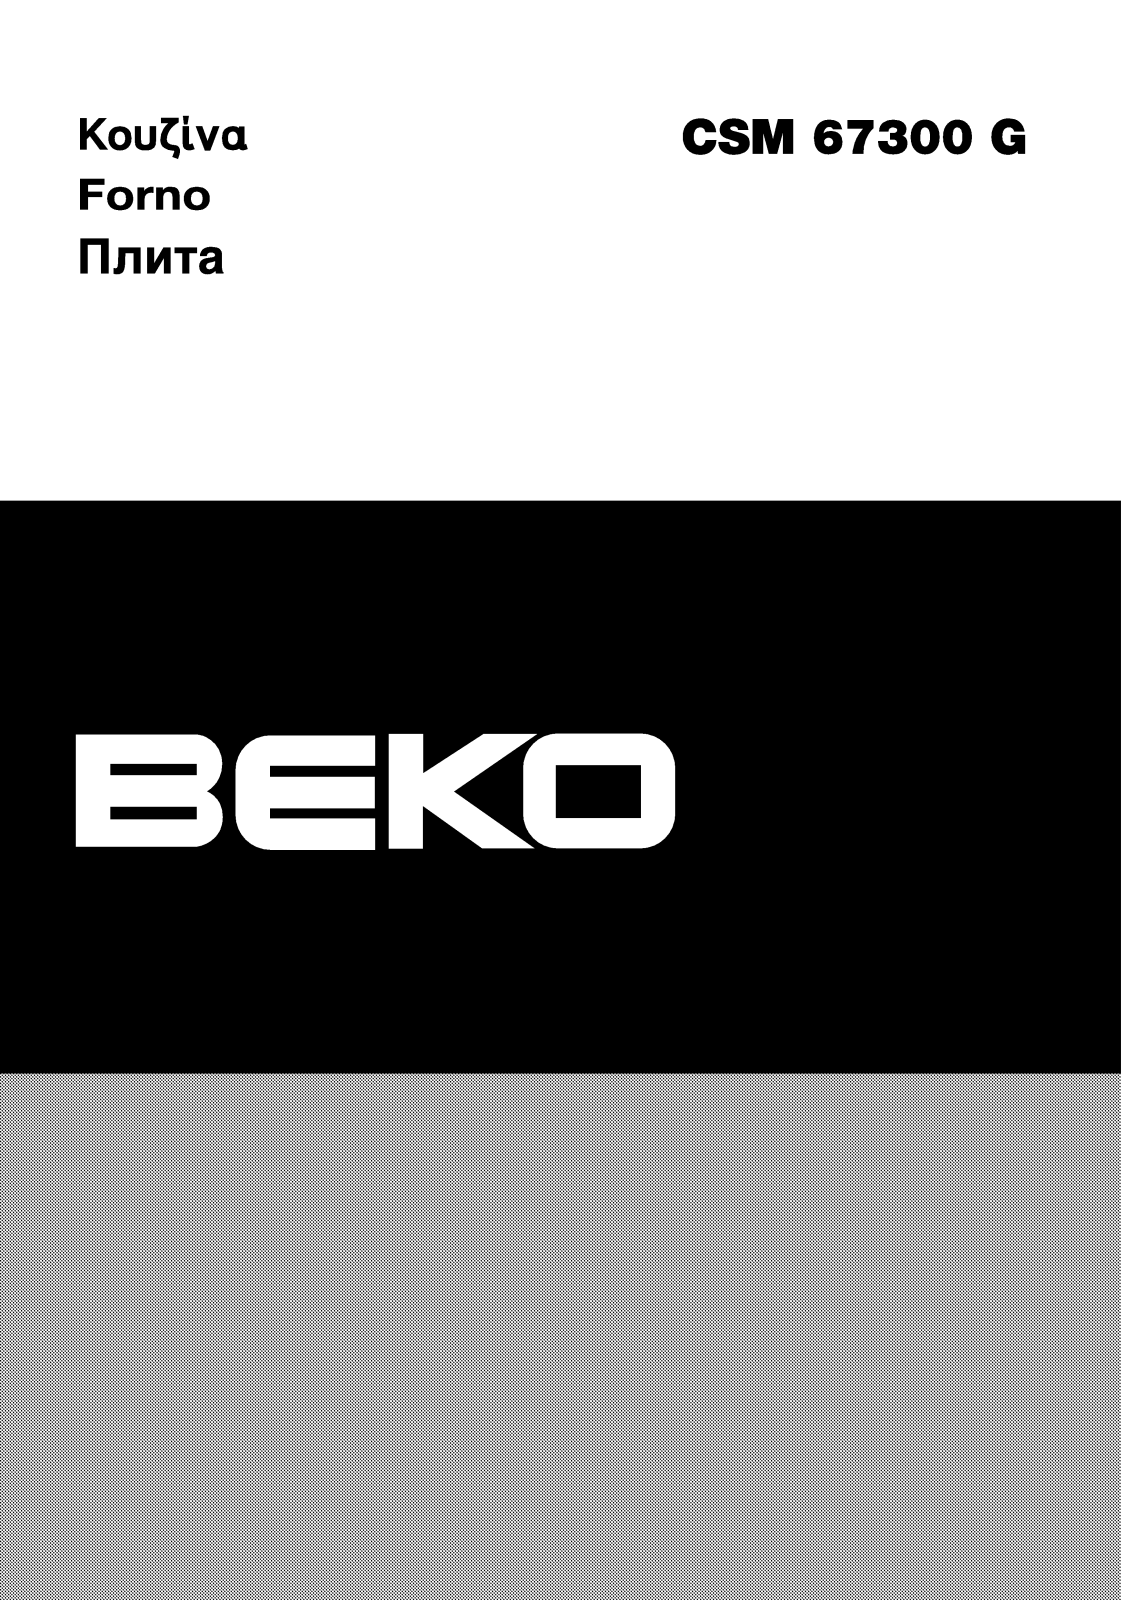 Beko CSM 67300 GW User Manual